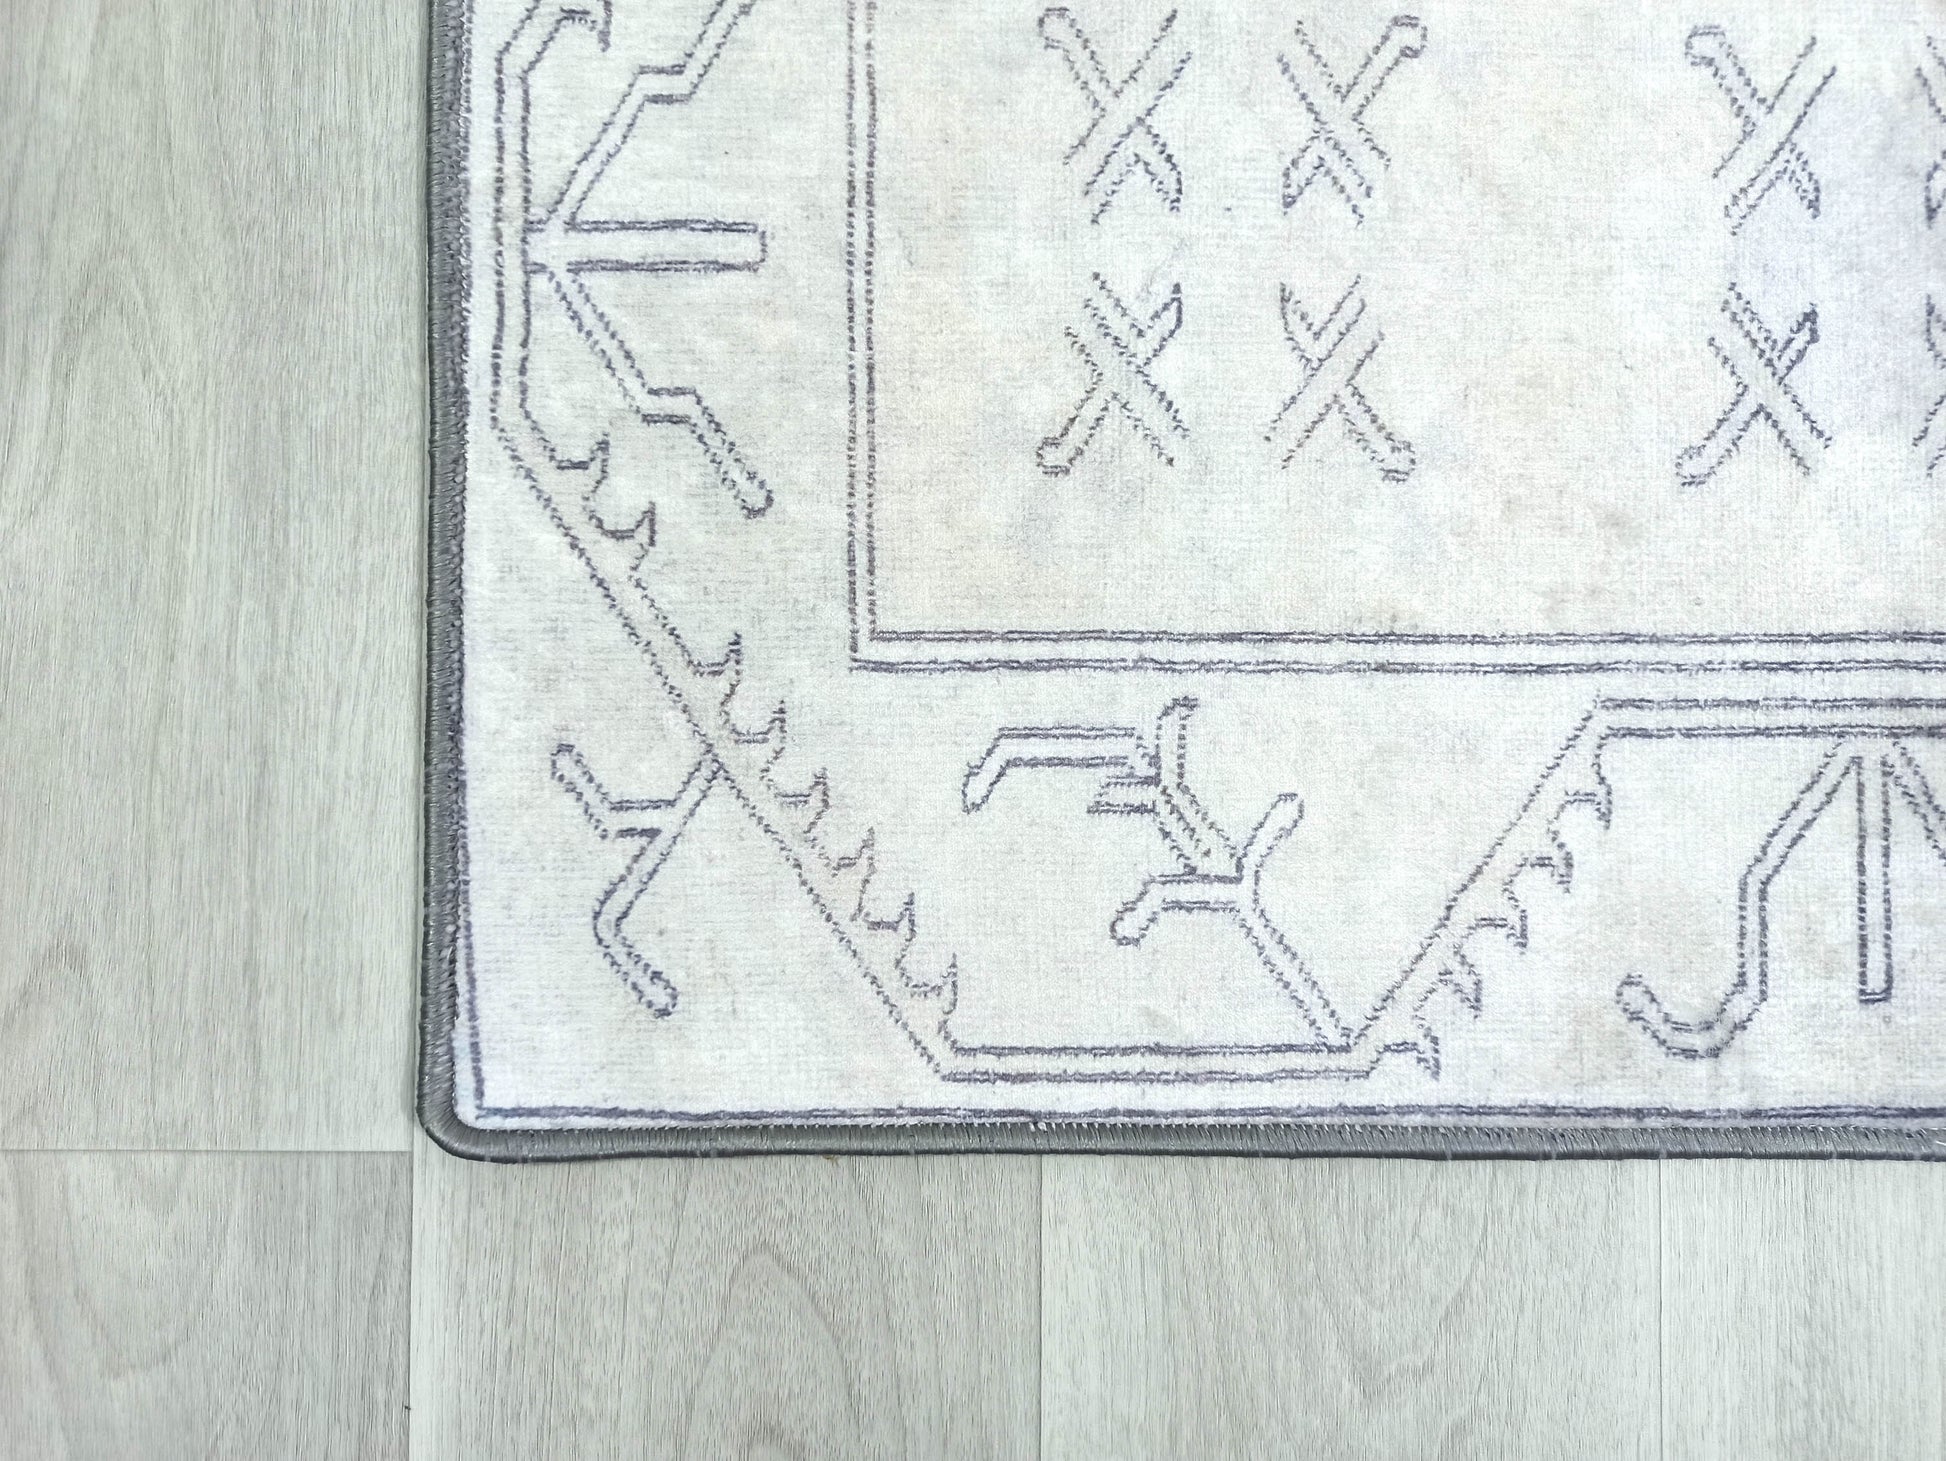 2x3 Turkish Rug Neutral Vintage Motif Entryway Door Bedside Floor Mat Non slip Bath Bathroom Bedroom Kitchen Doormat Rugs Soft Plush texture - famerugs